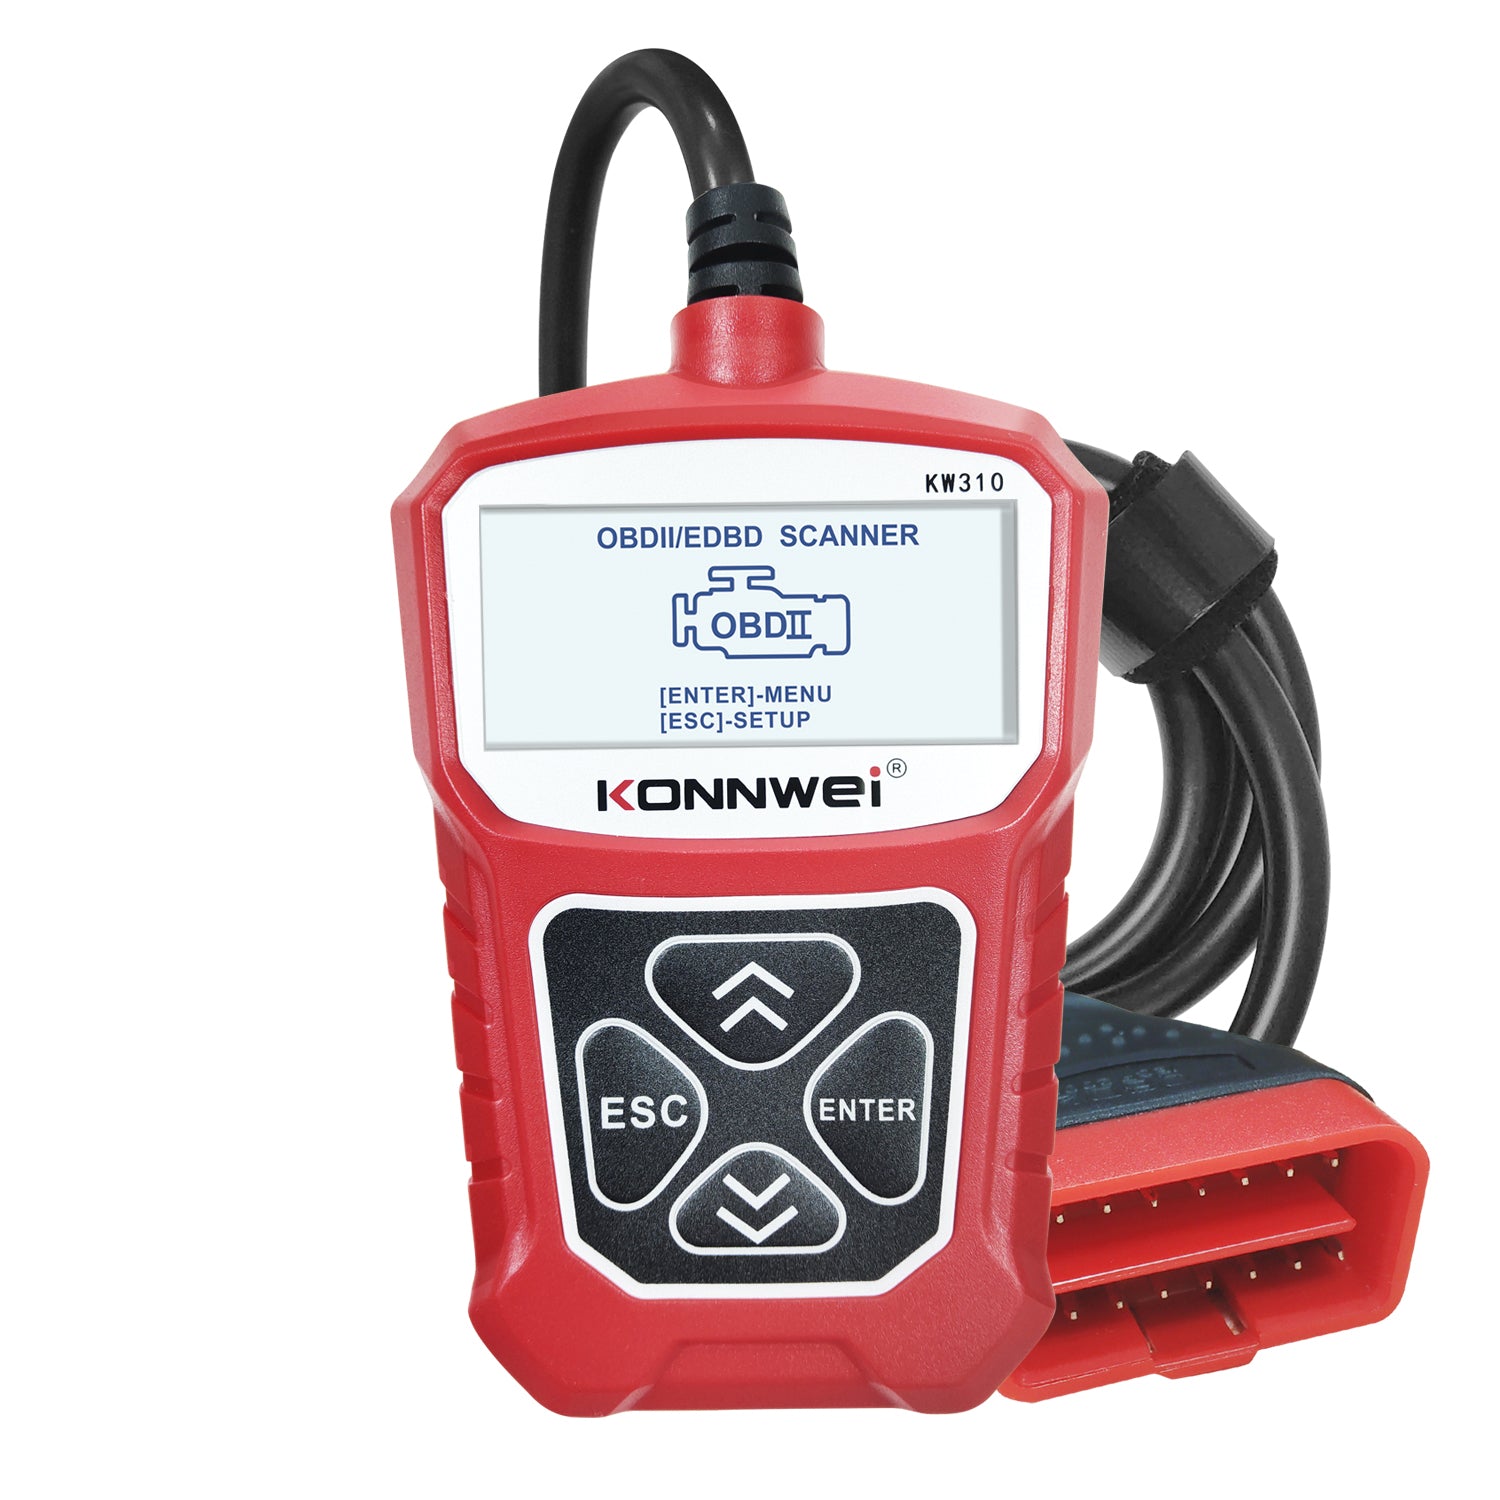 KONNWEI KW310 OBD2 Car Diagnostic Scanner EOBD Scan Tool DTC Engine Code Reader Voltage Test Built-in Speaker - Auto GoShop